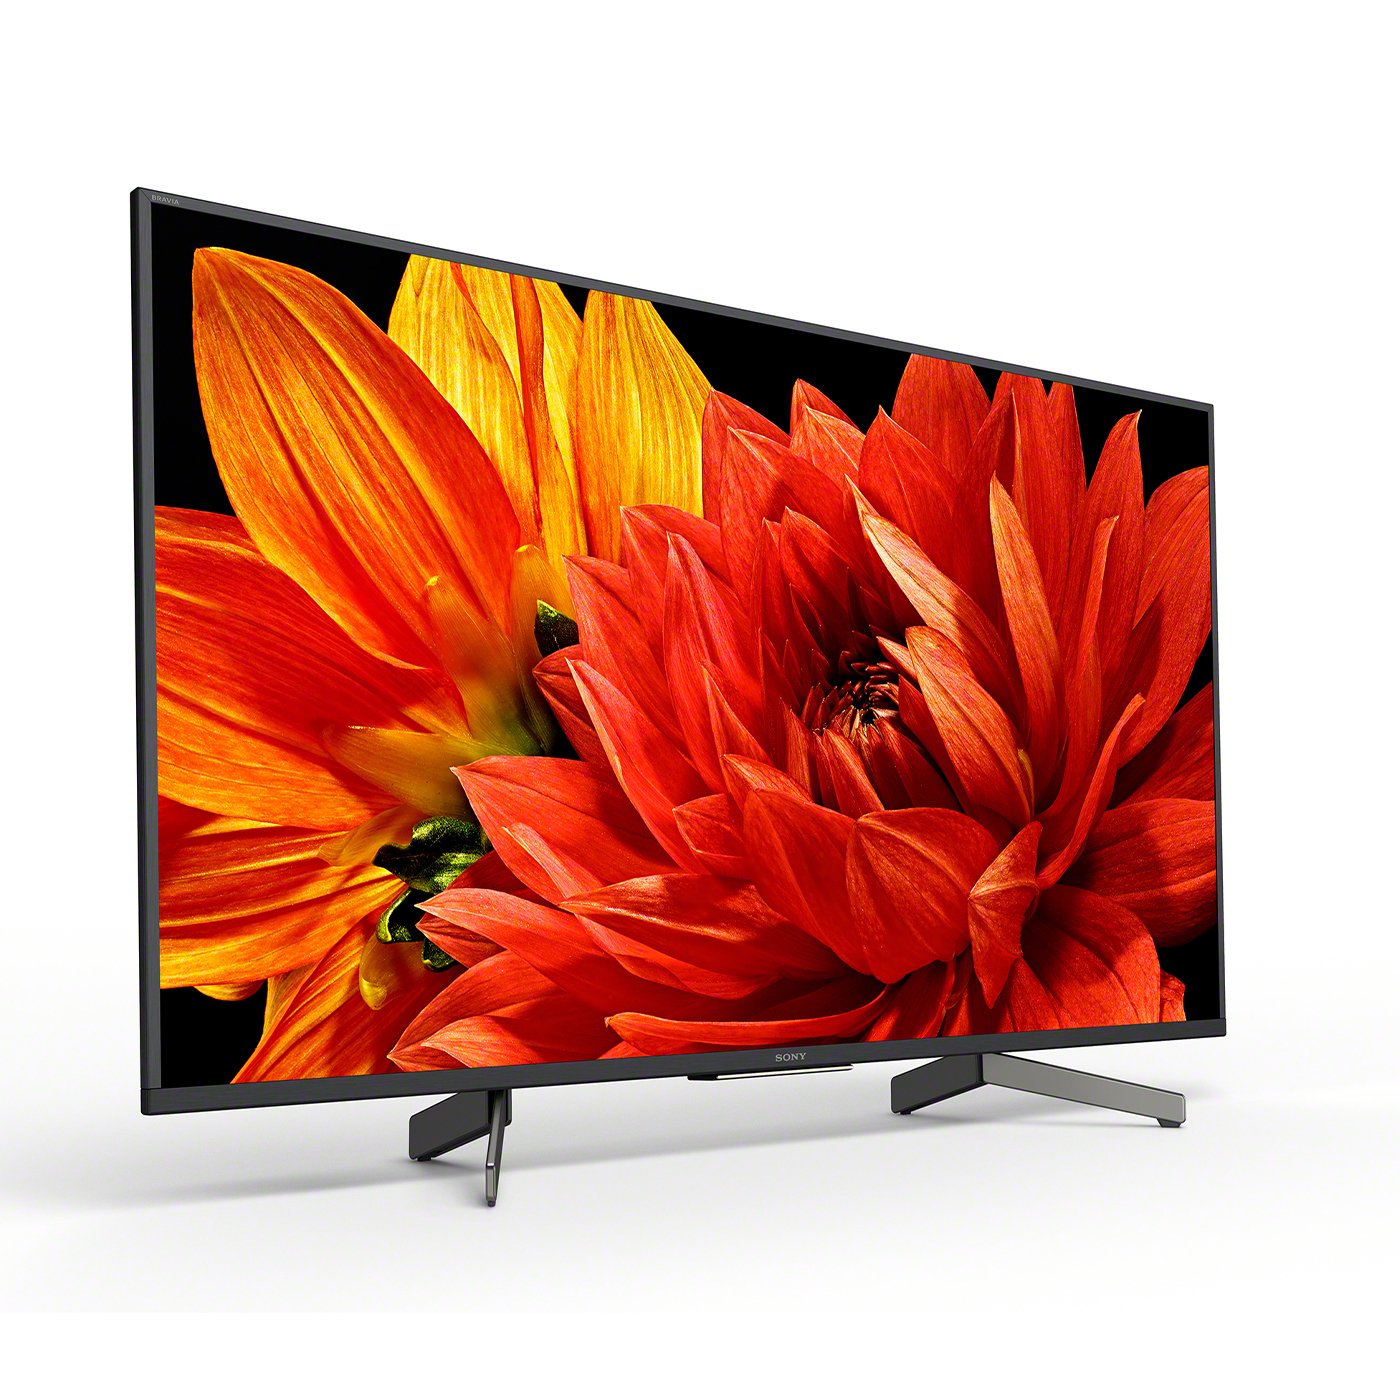 Sony 49 Inch KD49XG8305BU Smart 4K Ultra HD LED TV Review